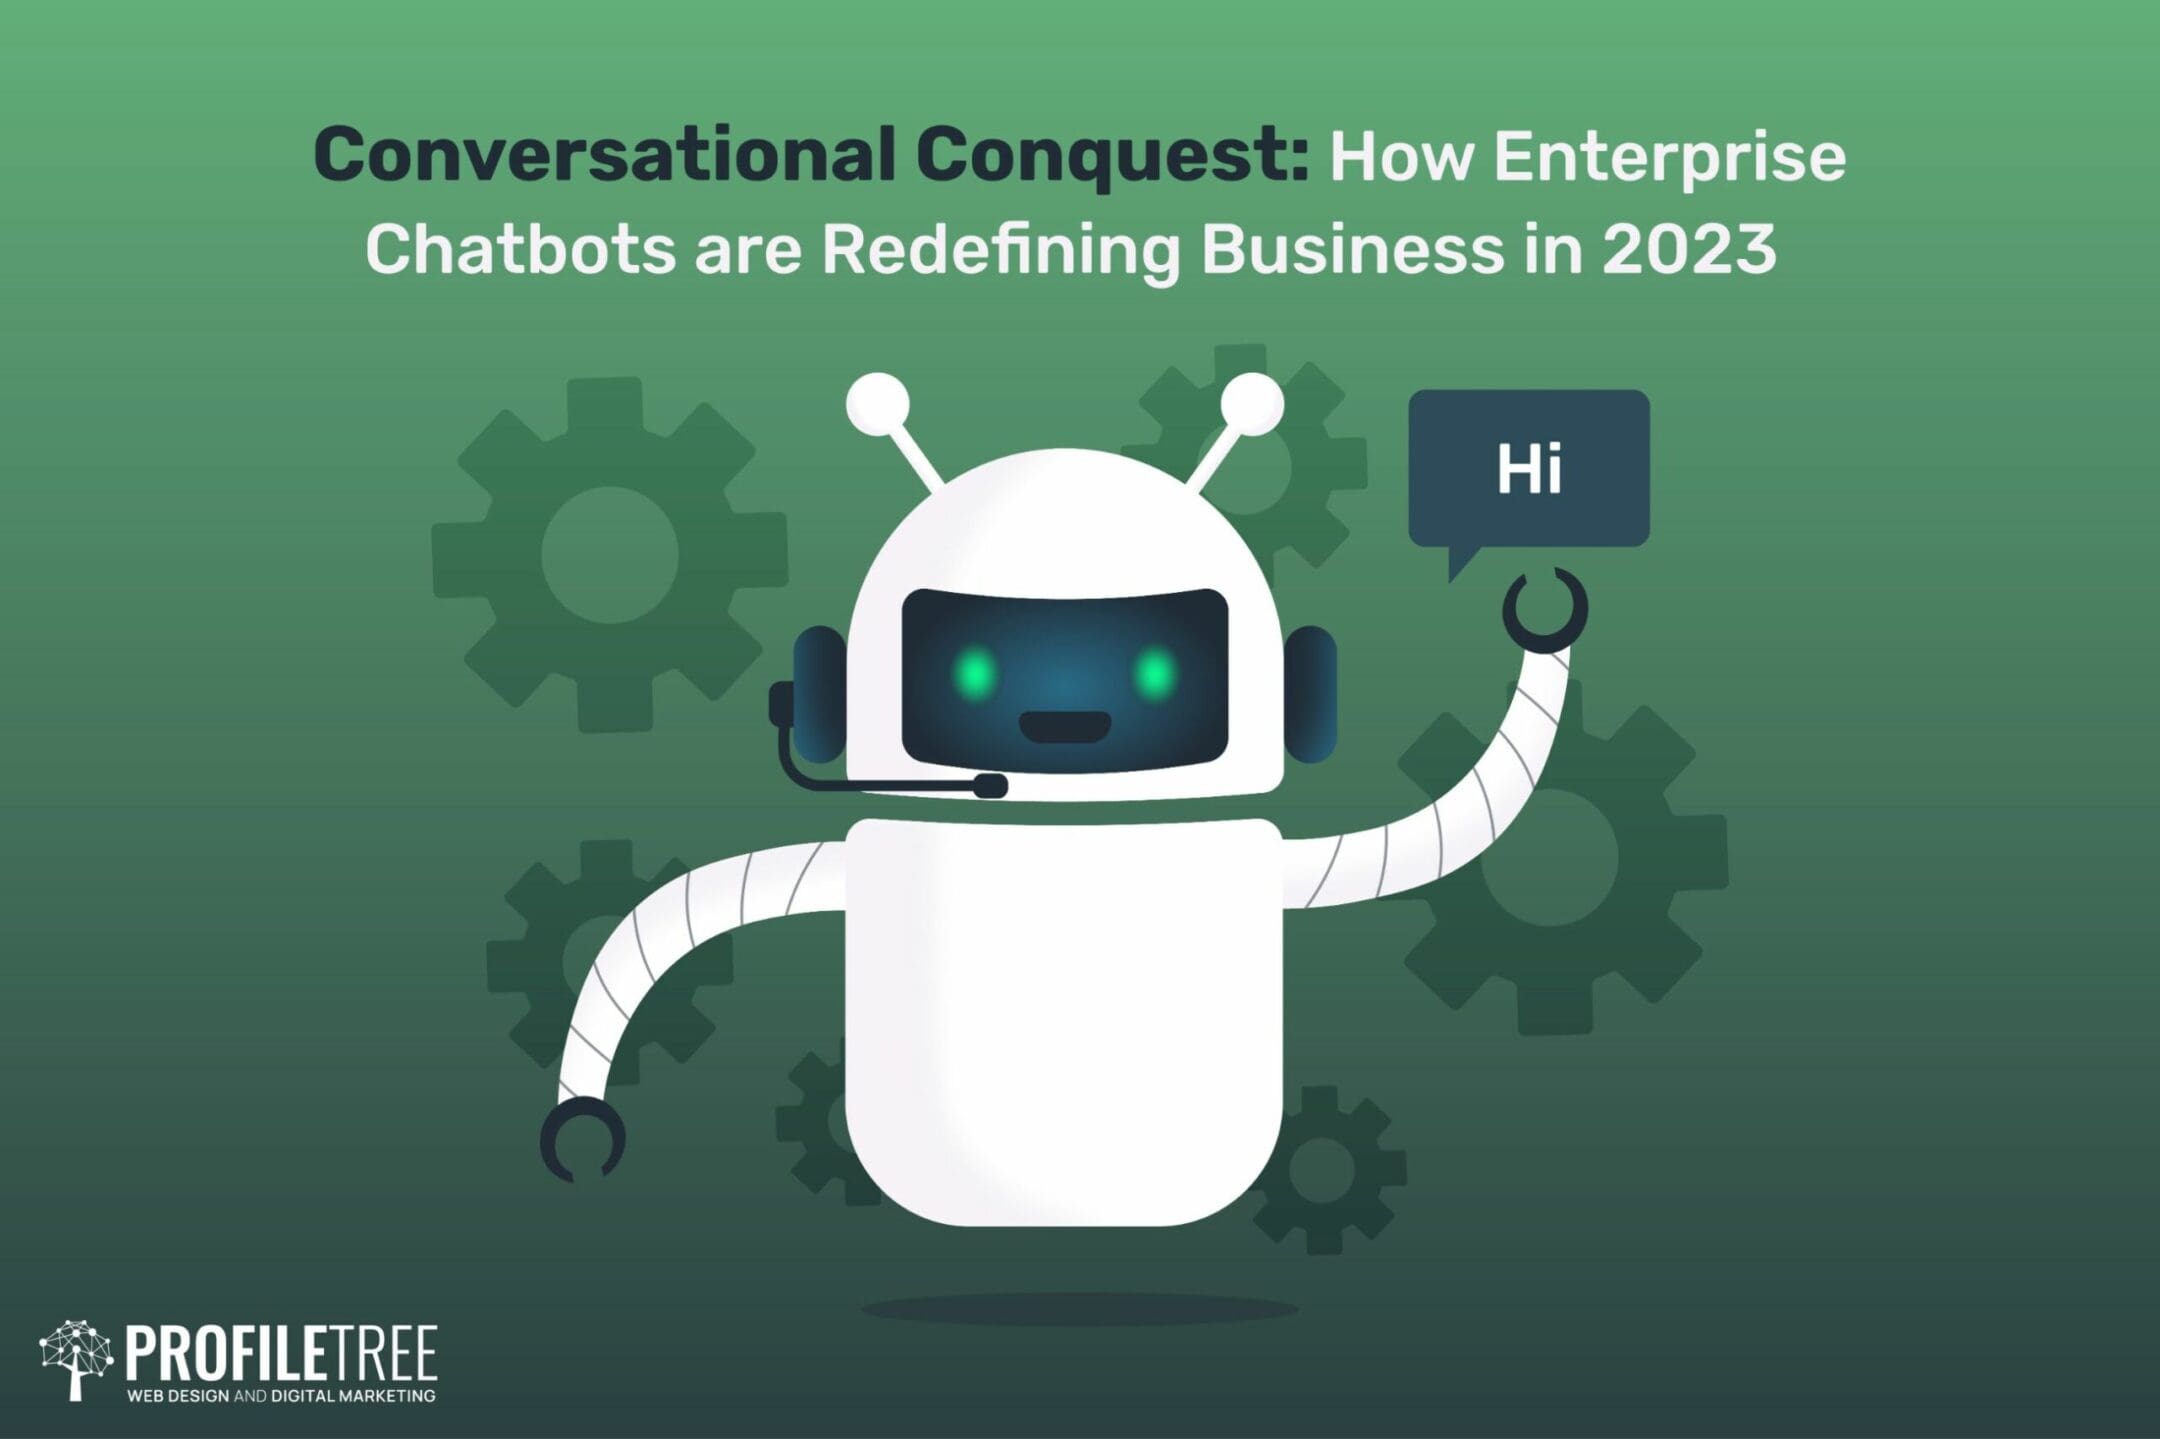 Enterprise Chatbots